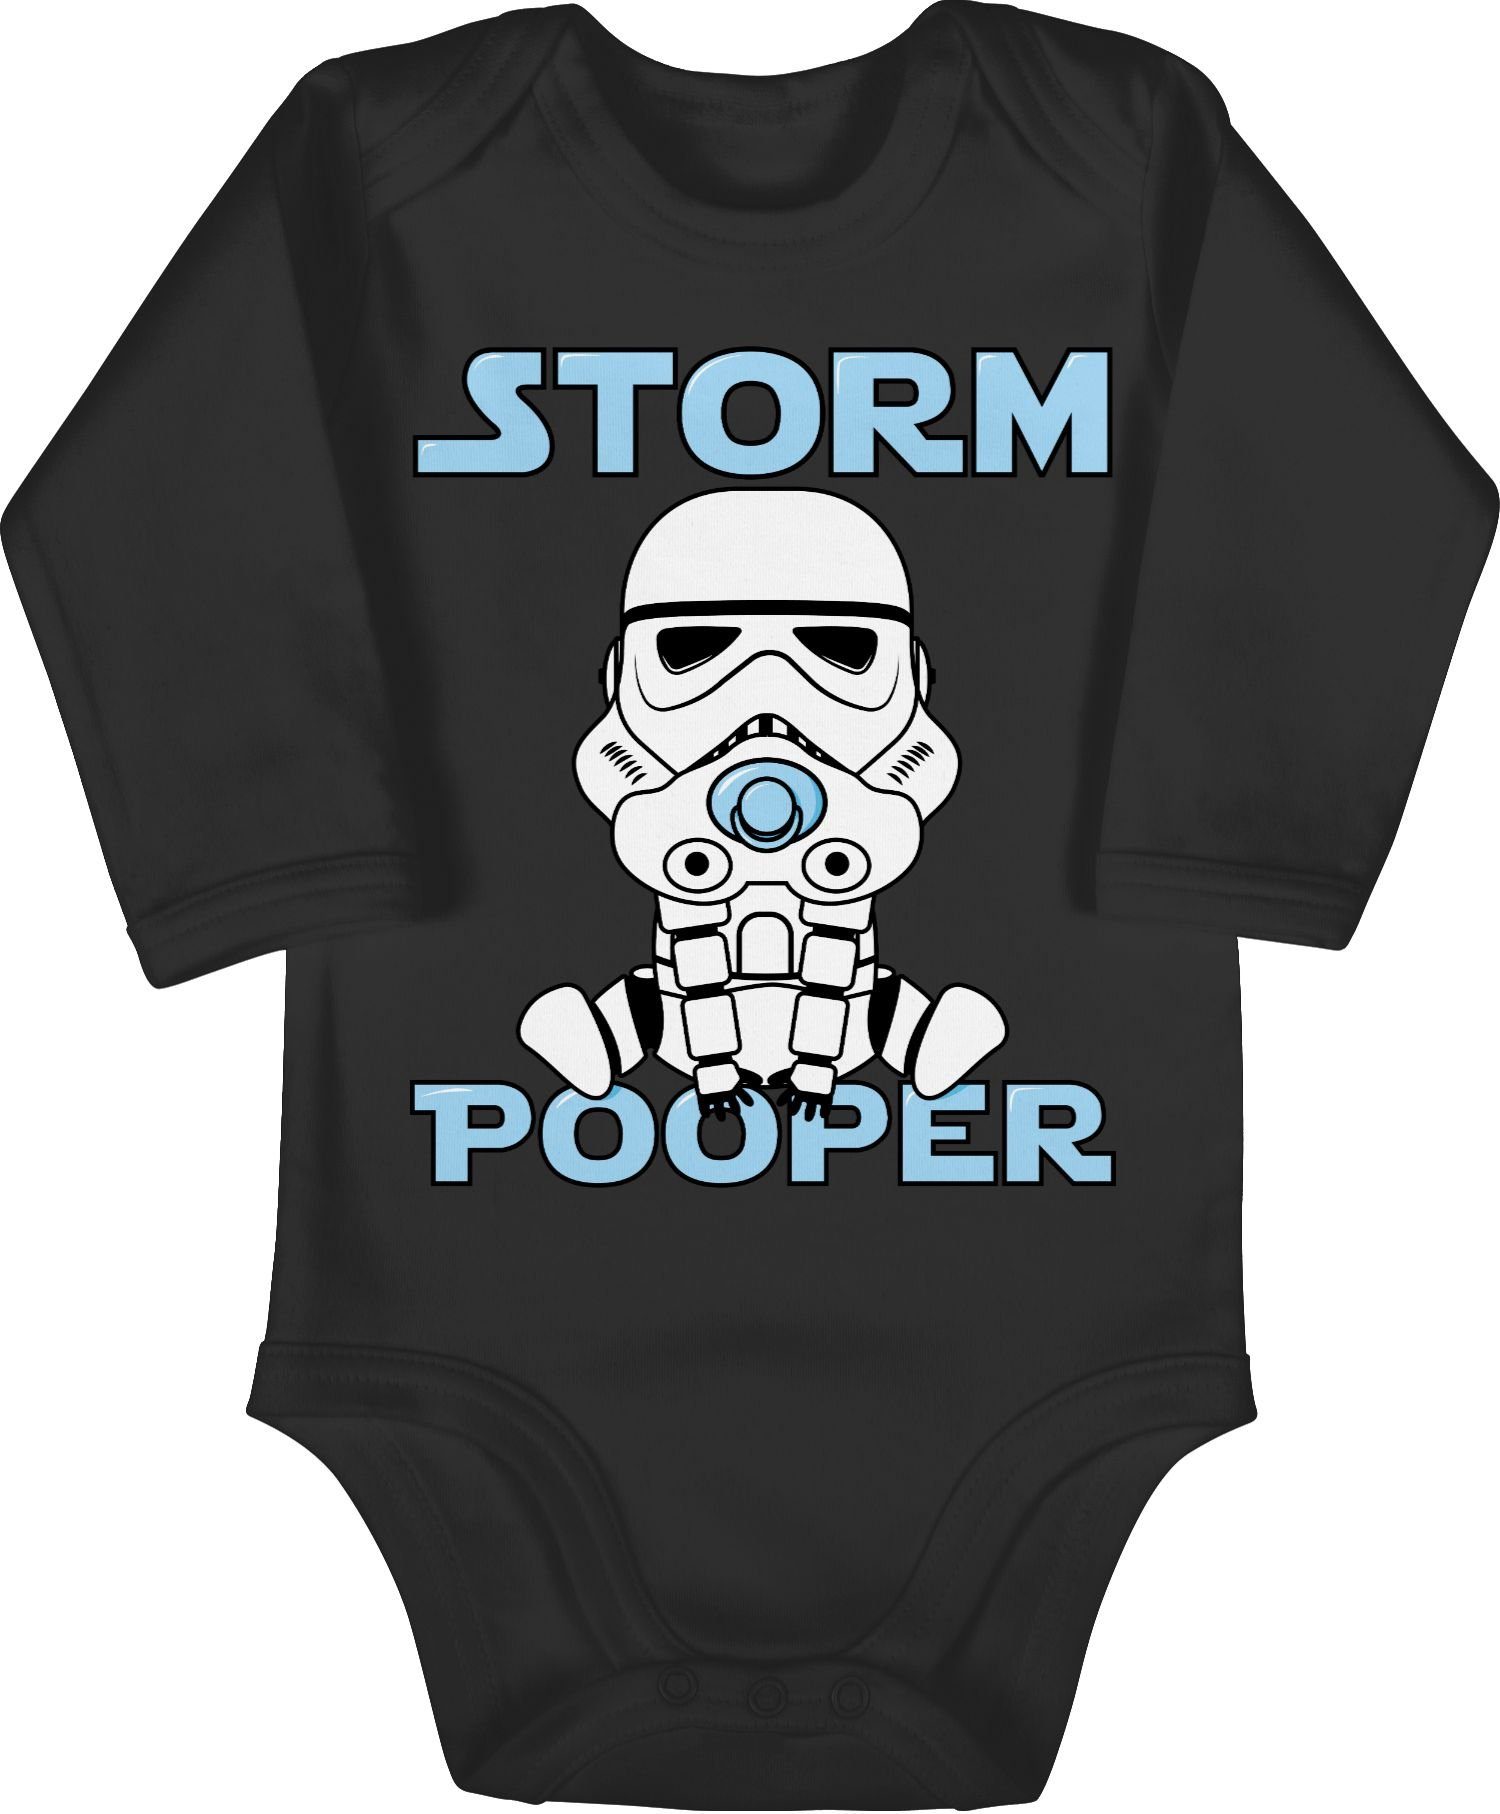 Shirtbody Shirtracer Pooper Stormpooper 2 Sprüche Baby Schwarz Storm